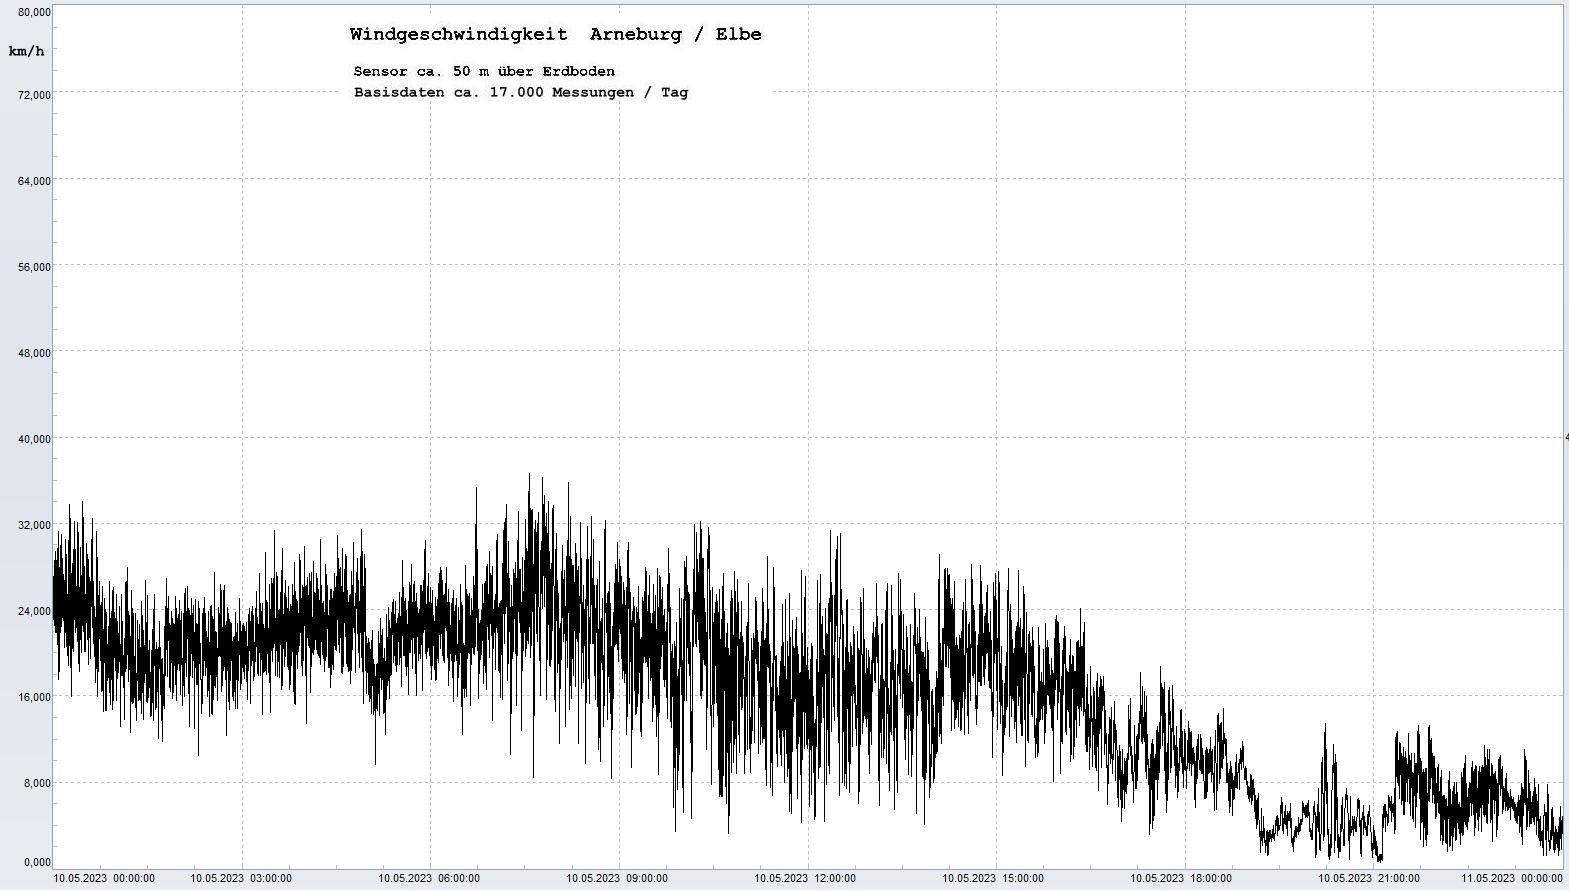 Arneburg Tages-Diagramm Winddaten, 10.05.2023
  Diagramm, Sensor auf Gebäude, ca. 50 m über Erdboden, Basis: 5s-Aufzeichnung